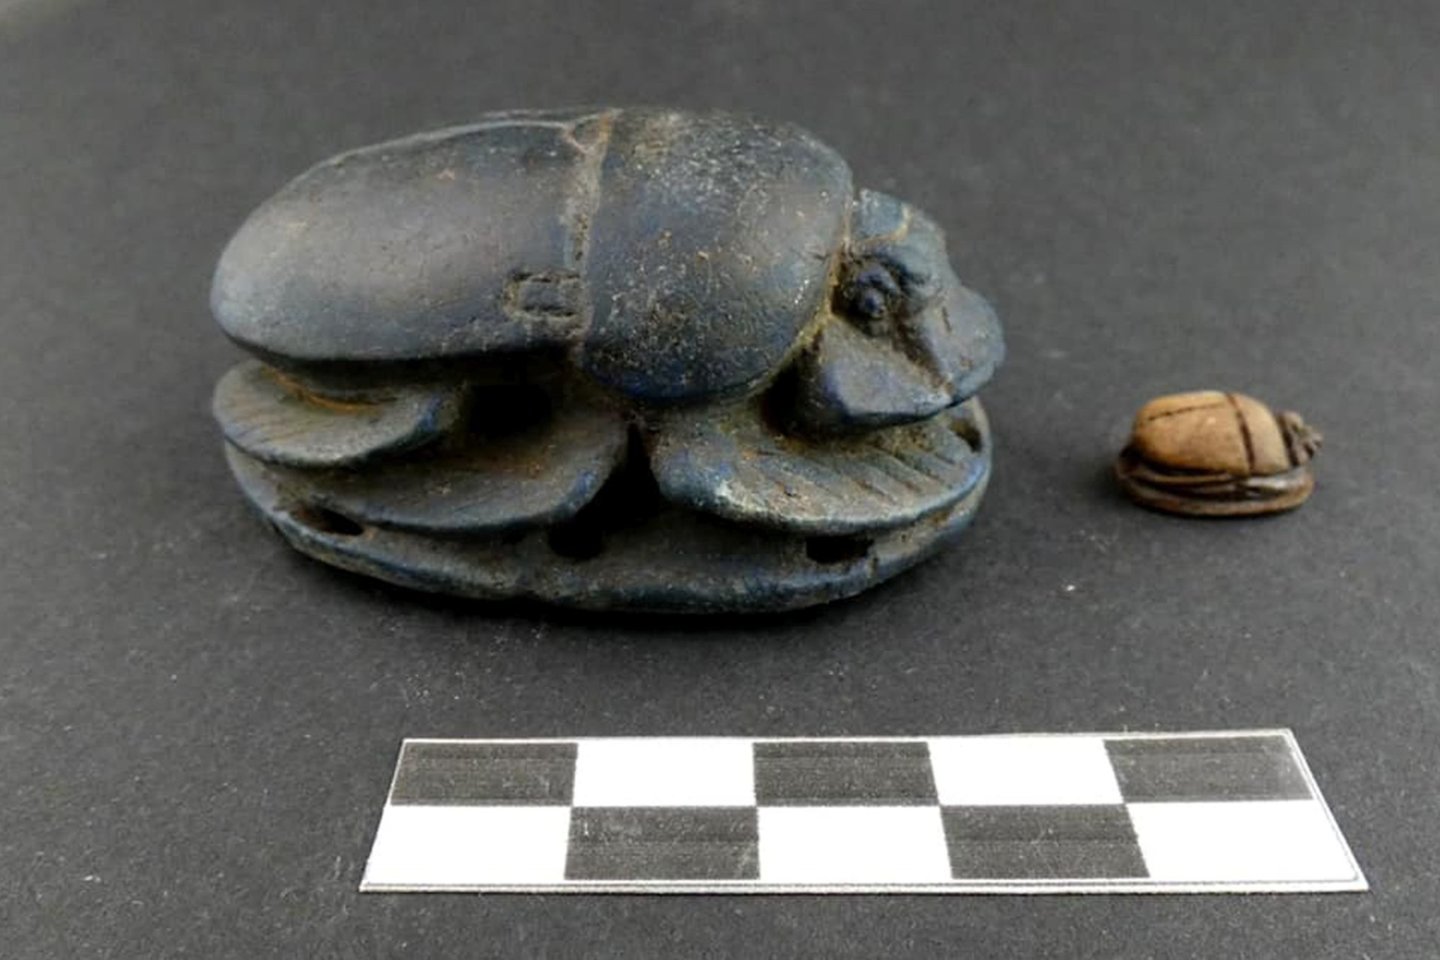  Vyro kape buvo rasta senovės Egipto artefaktų, tokių kaip šis skarabėjas.<br> Egipto turizmo ir senienų ministerijos nuotr.